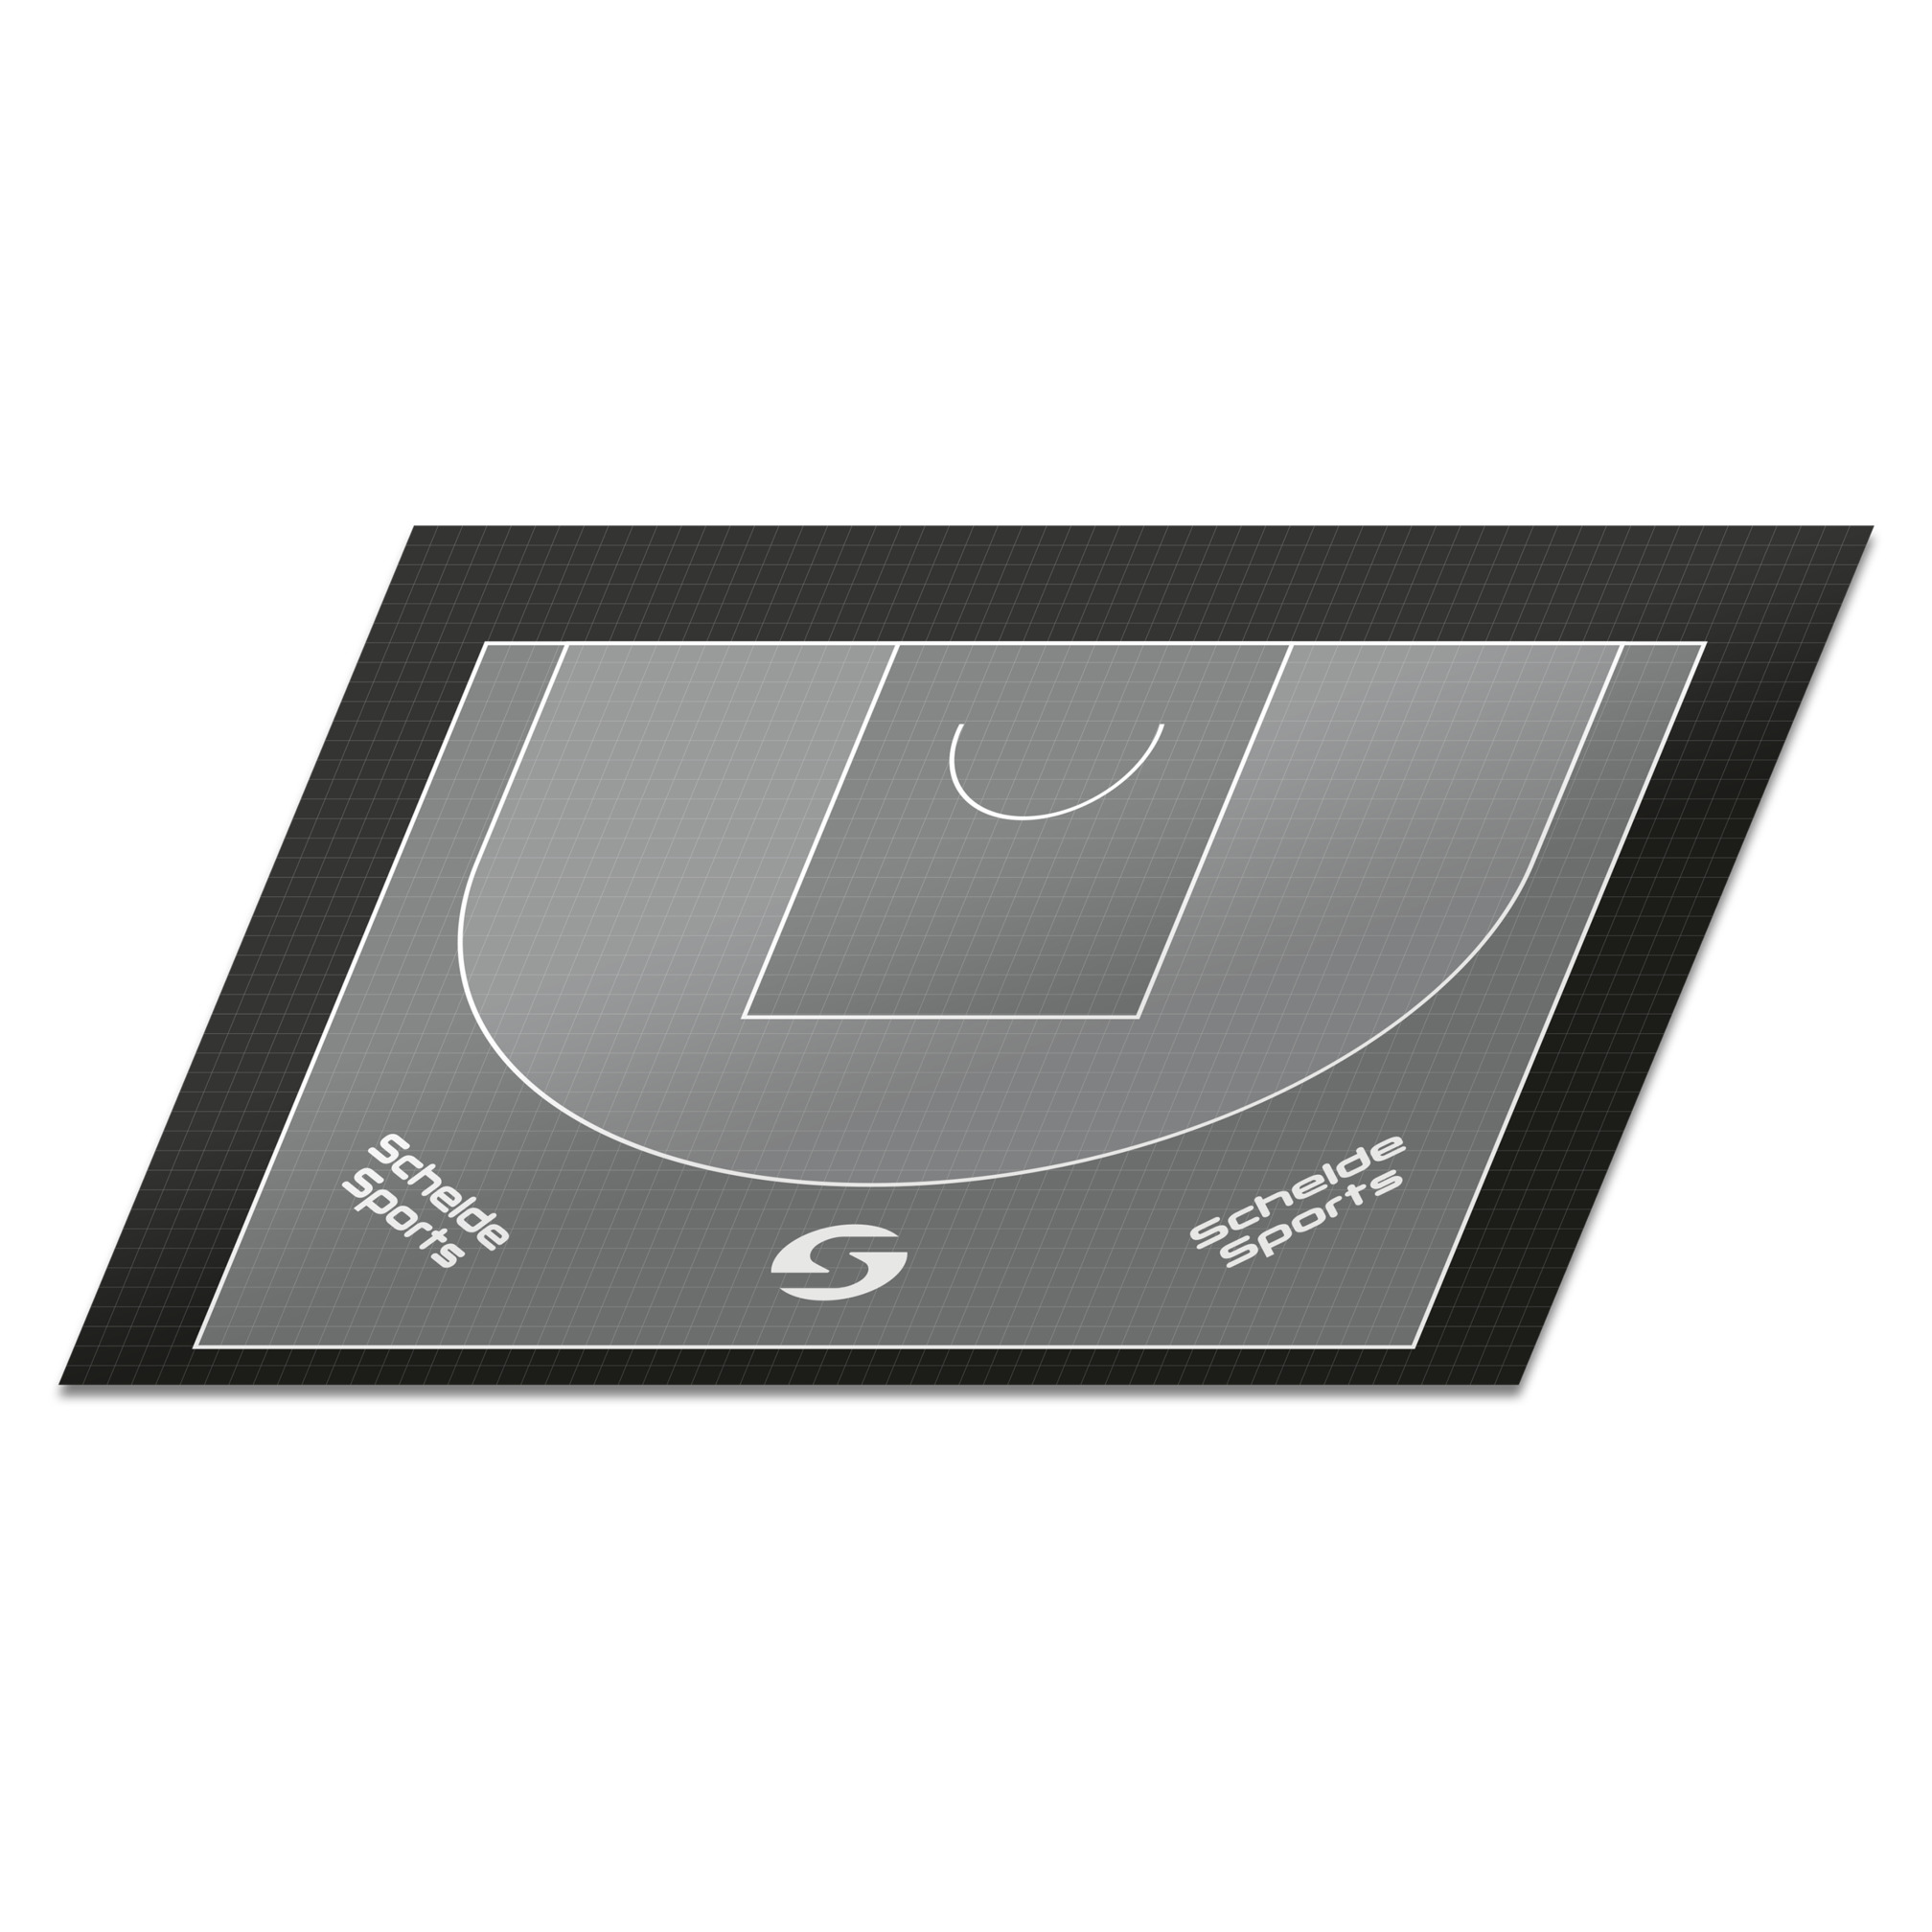 Schelde Sports 3x3 Basketballboden - mit Linien